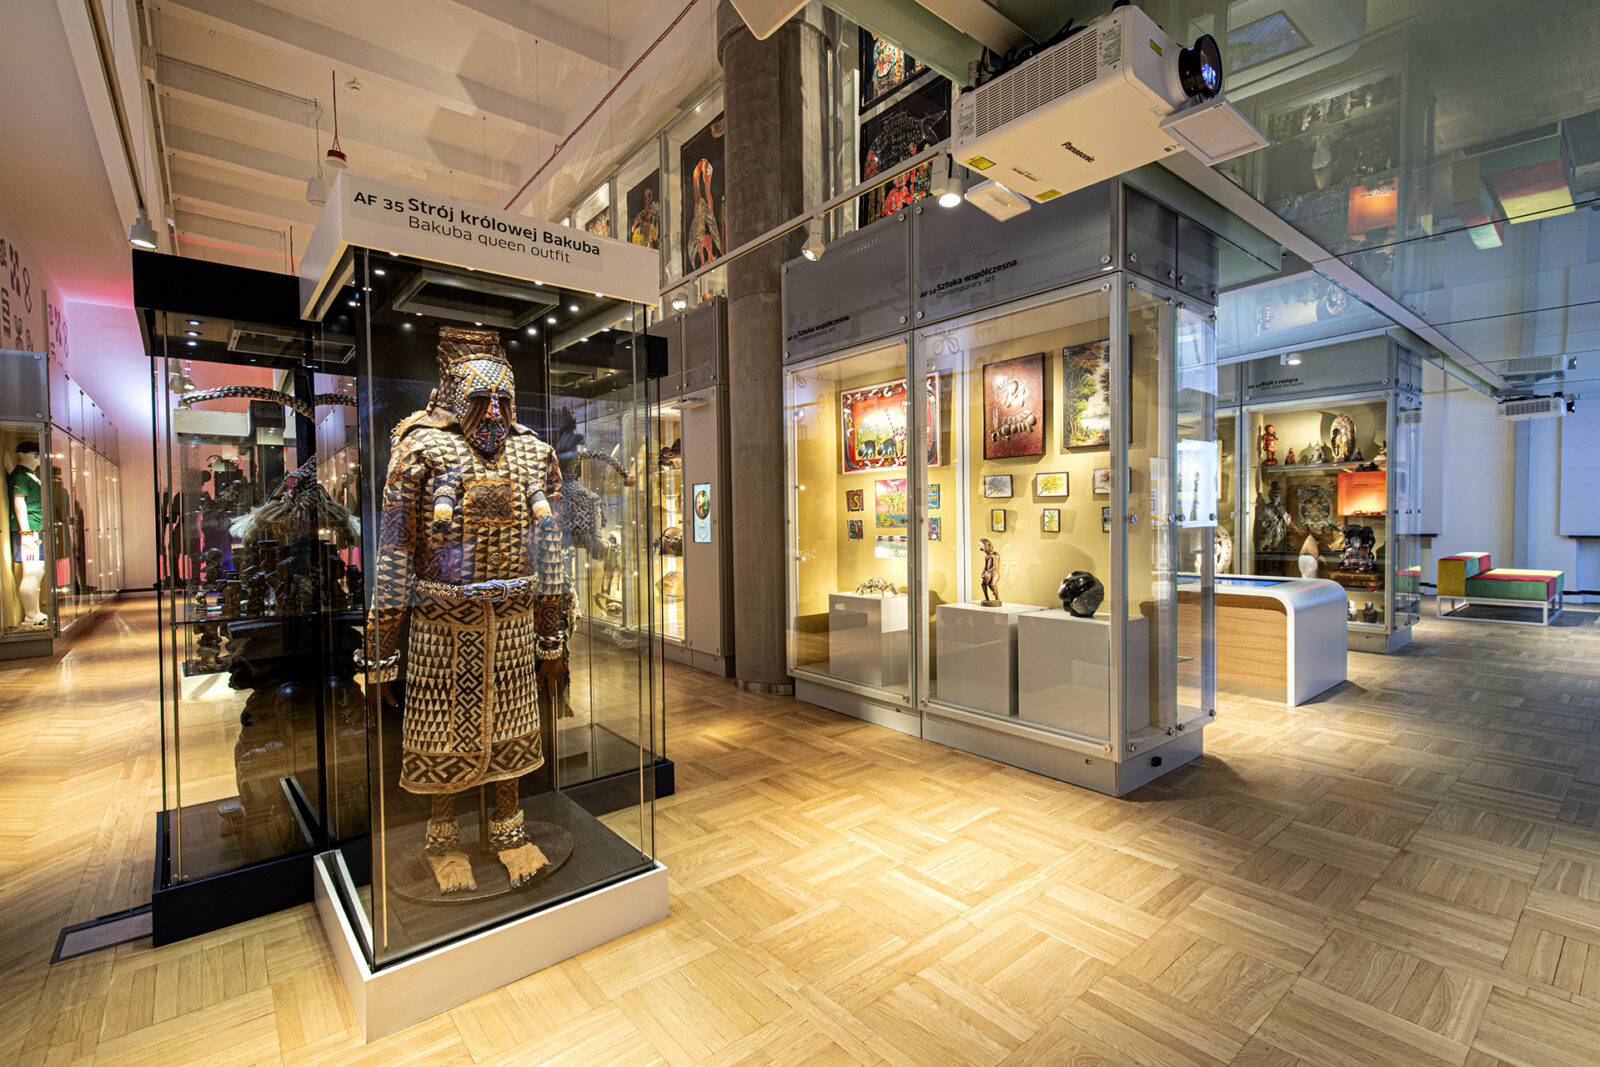 Widok wystawy. W szklanych gablotach obiekty z Afryki. W gablocie na pierwszym planie strój królowej Bakuba zdobiony graficznym wzorem.